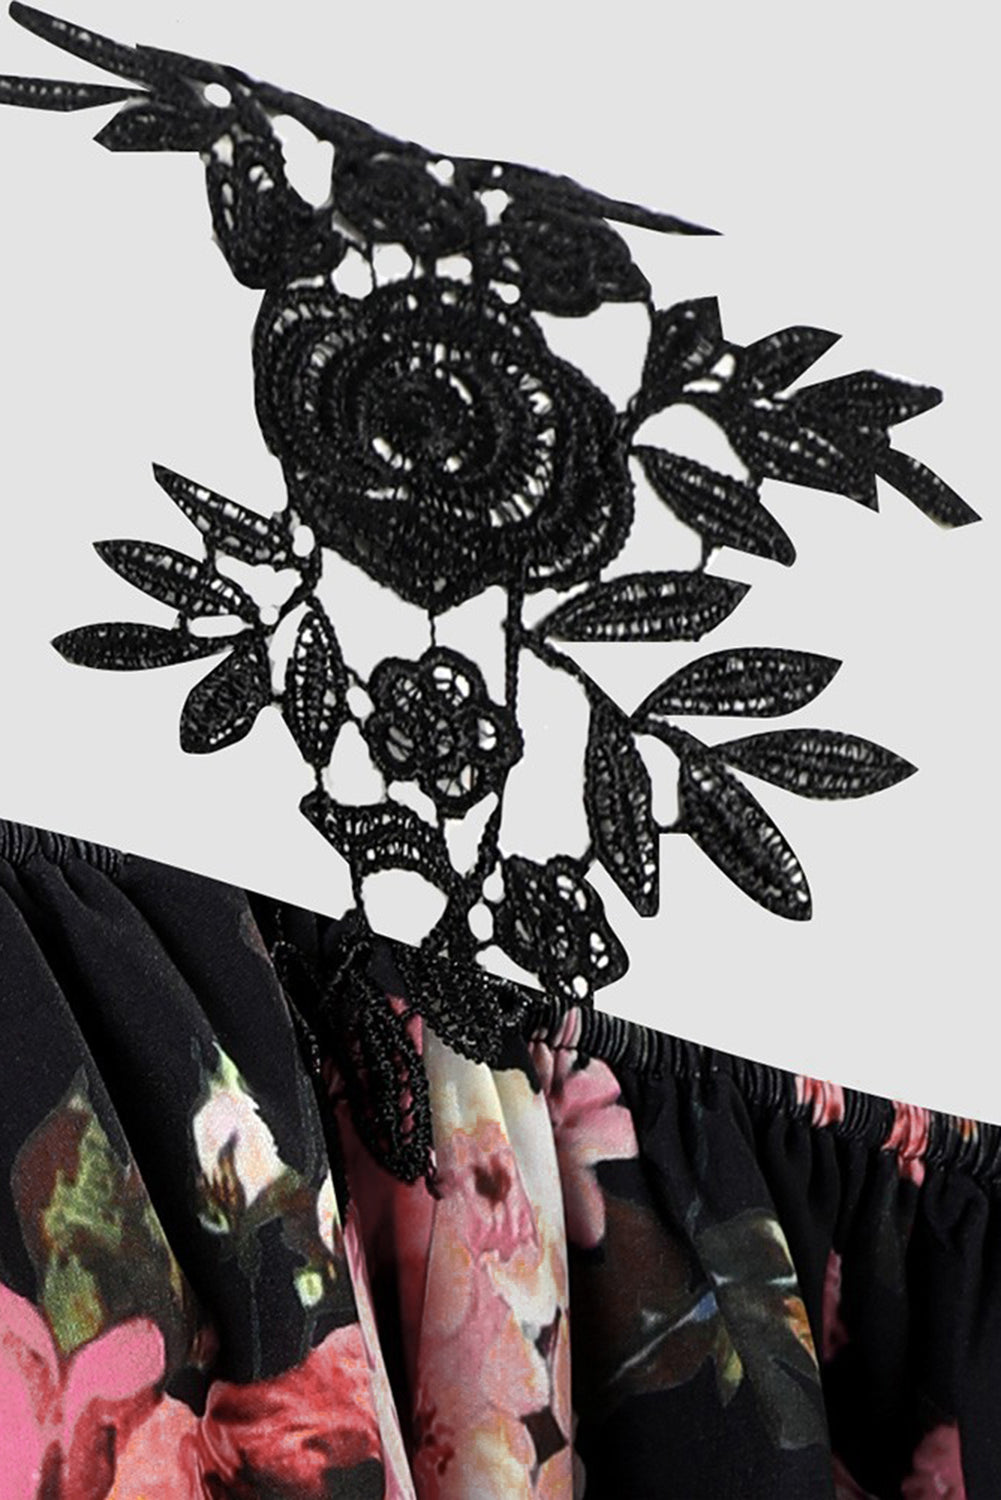 Črna ohlapna ohlapna bluza z mrzlimi rameni iz čipke s cvetličnim vzorcem